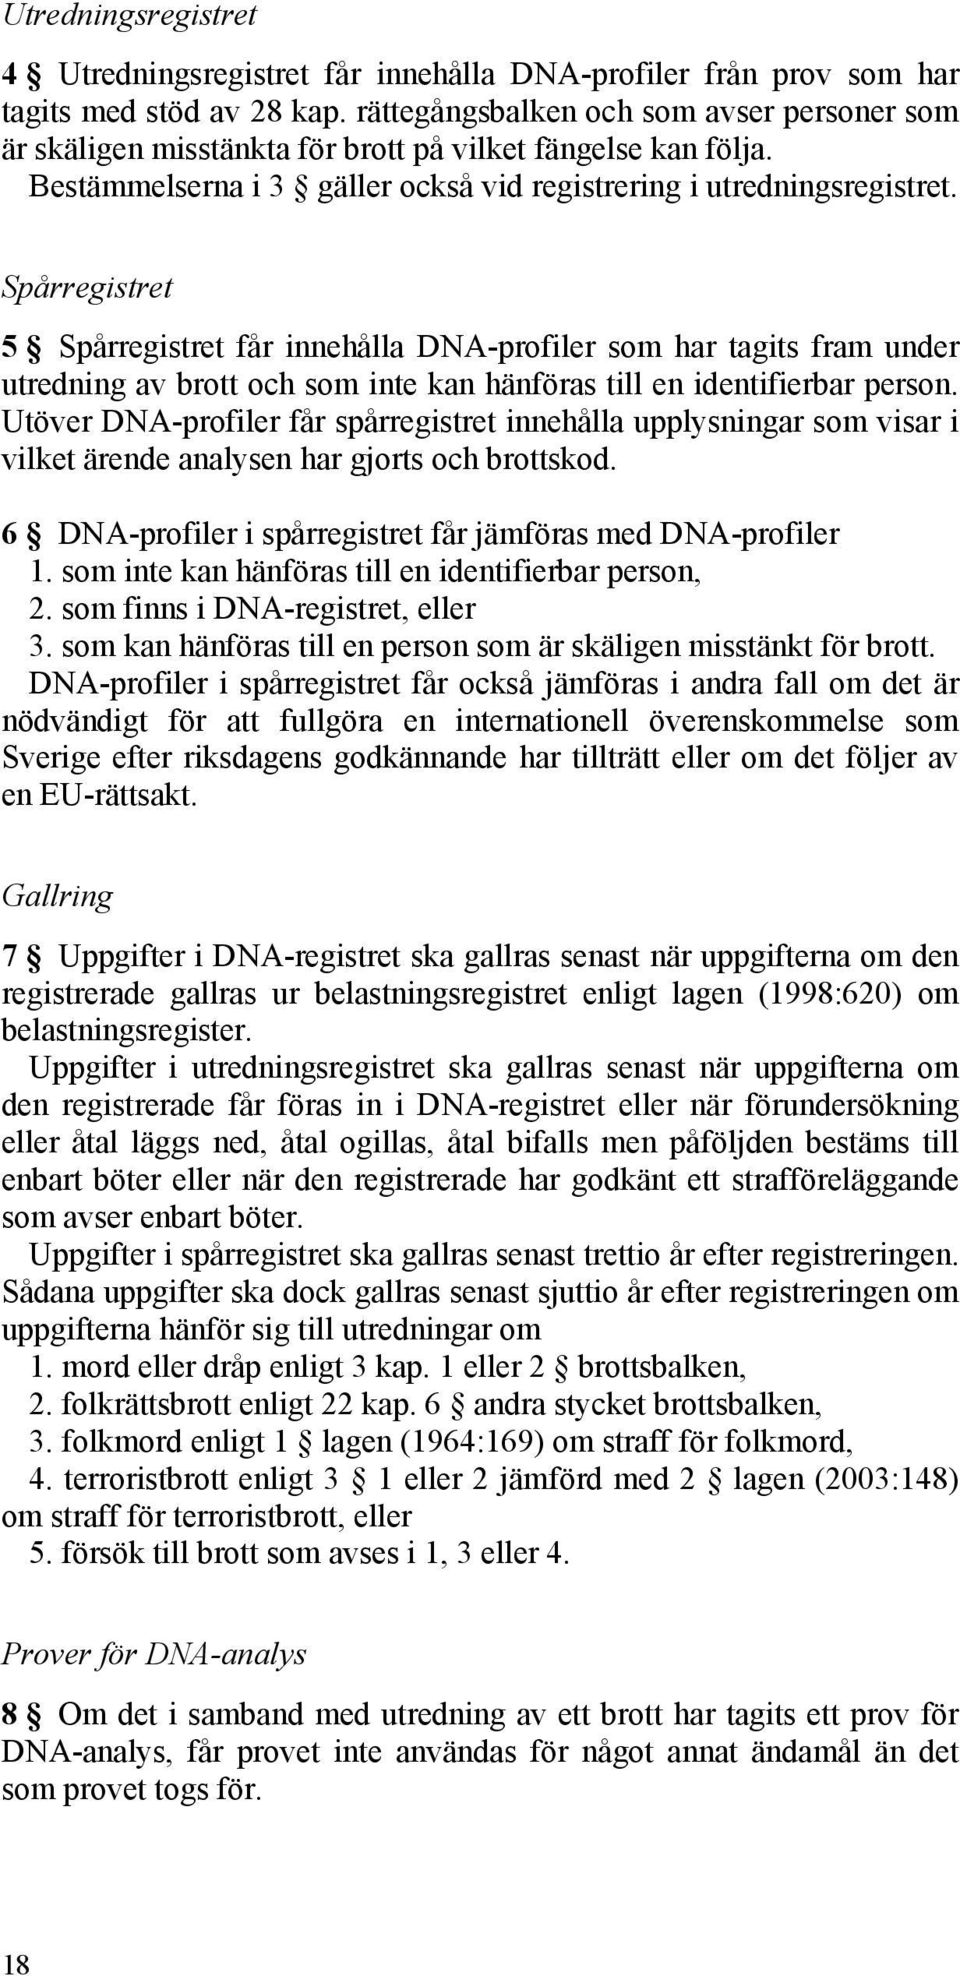 Spårregistret 5 Spårregistret får innehålla DNA-profiler som har tagits fram under utredning av brott och som inte kan hänföras till en identifierbar person.